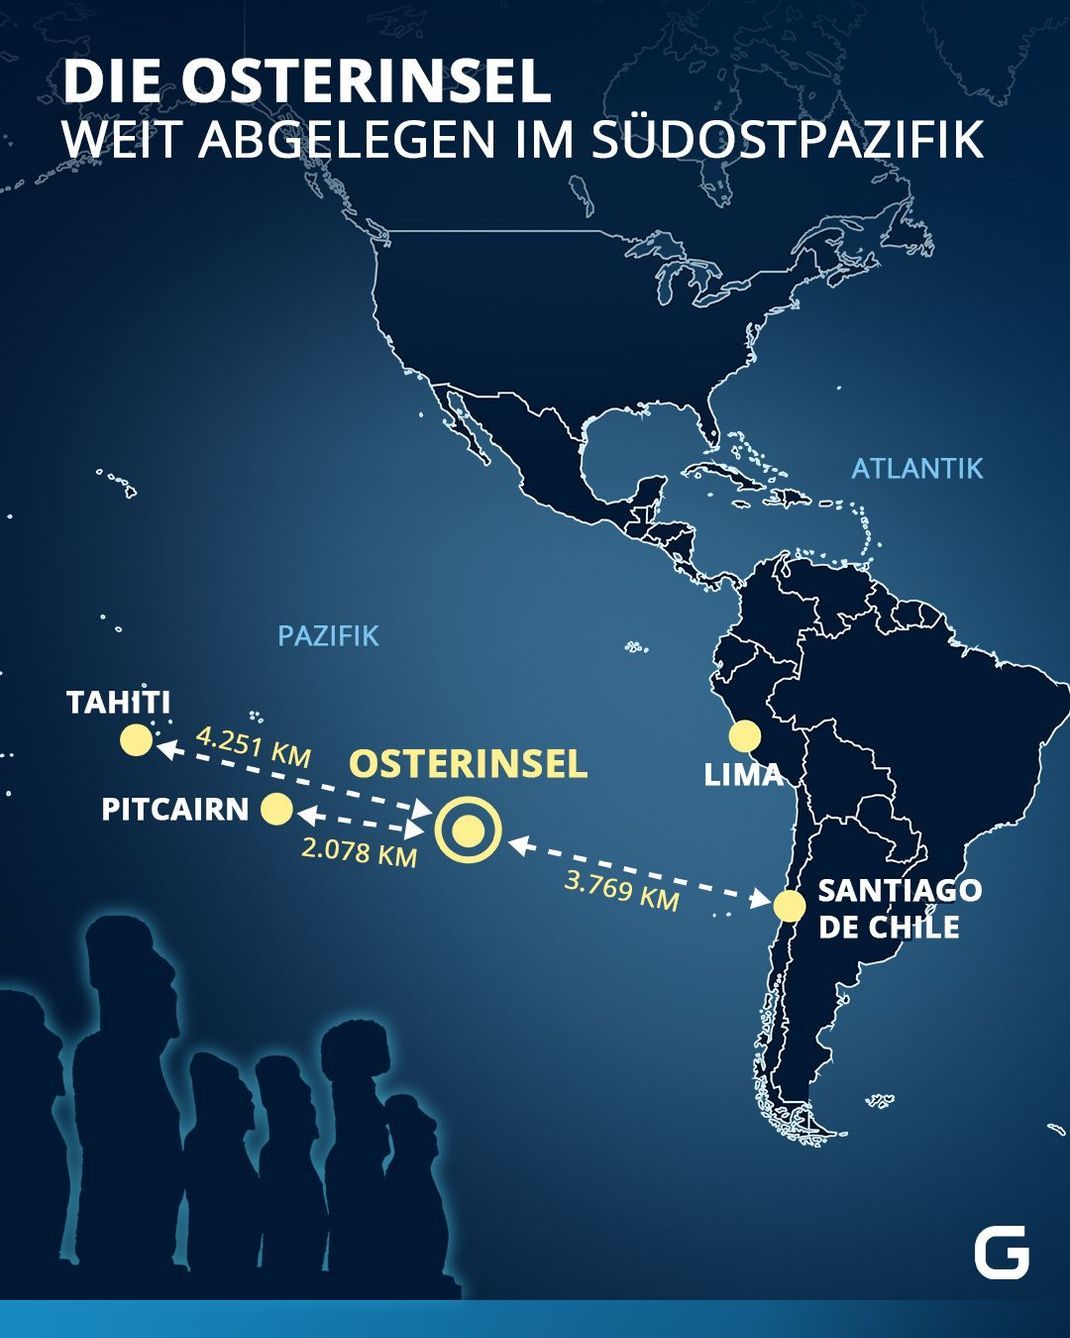 Die Lage der Osterinsel: Die Insel ist weit entlegen im Südpazifik. 